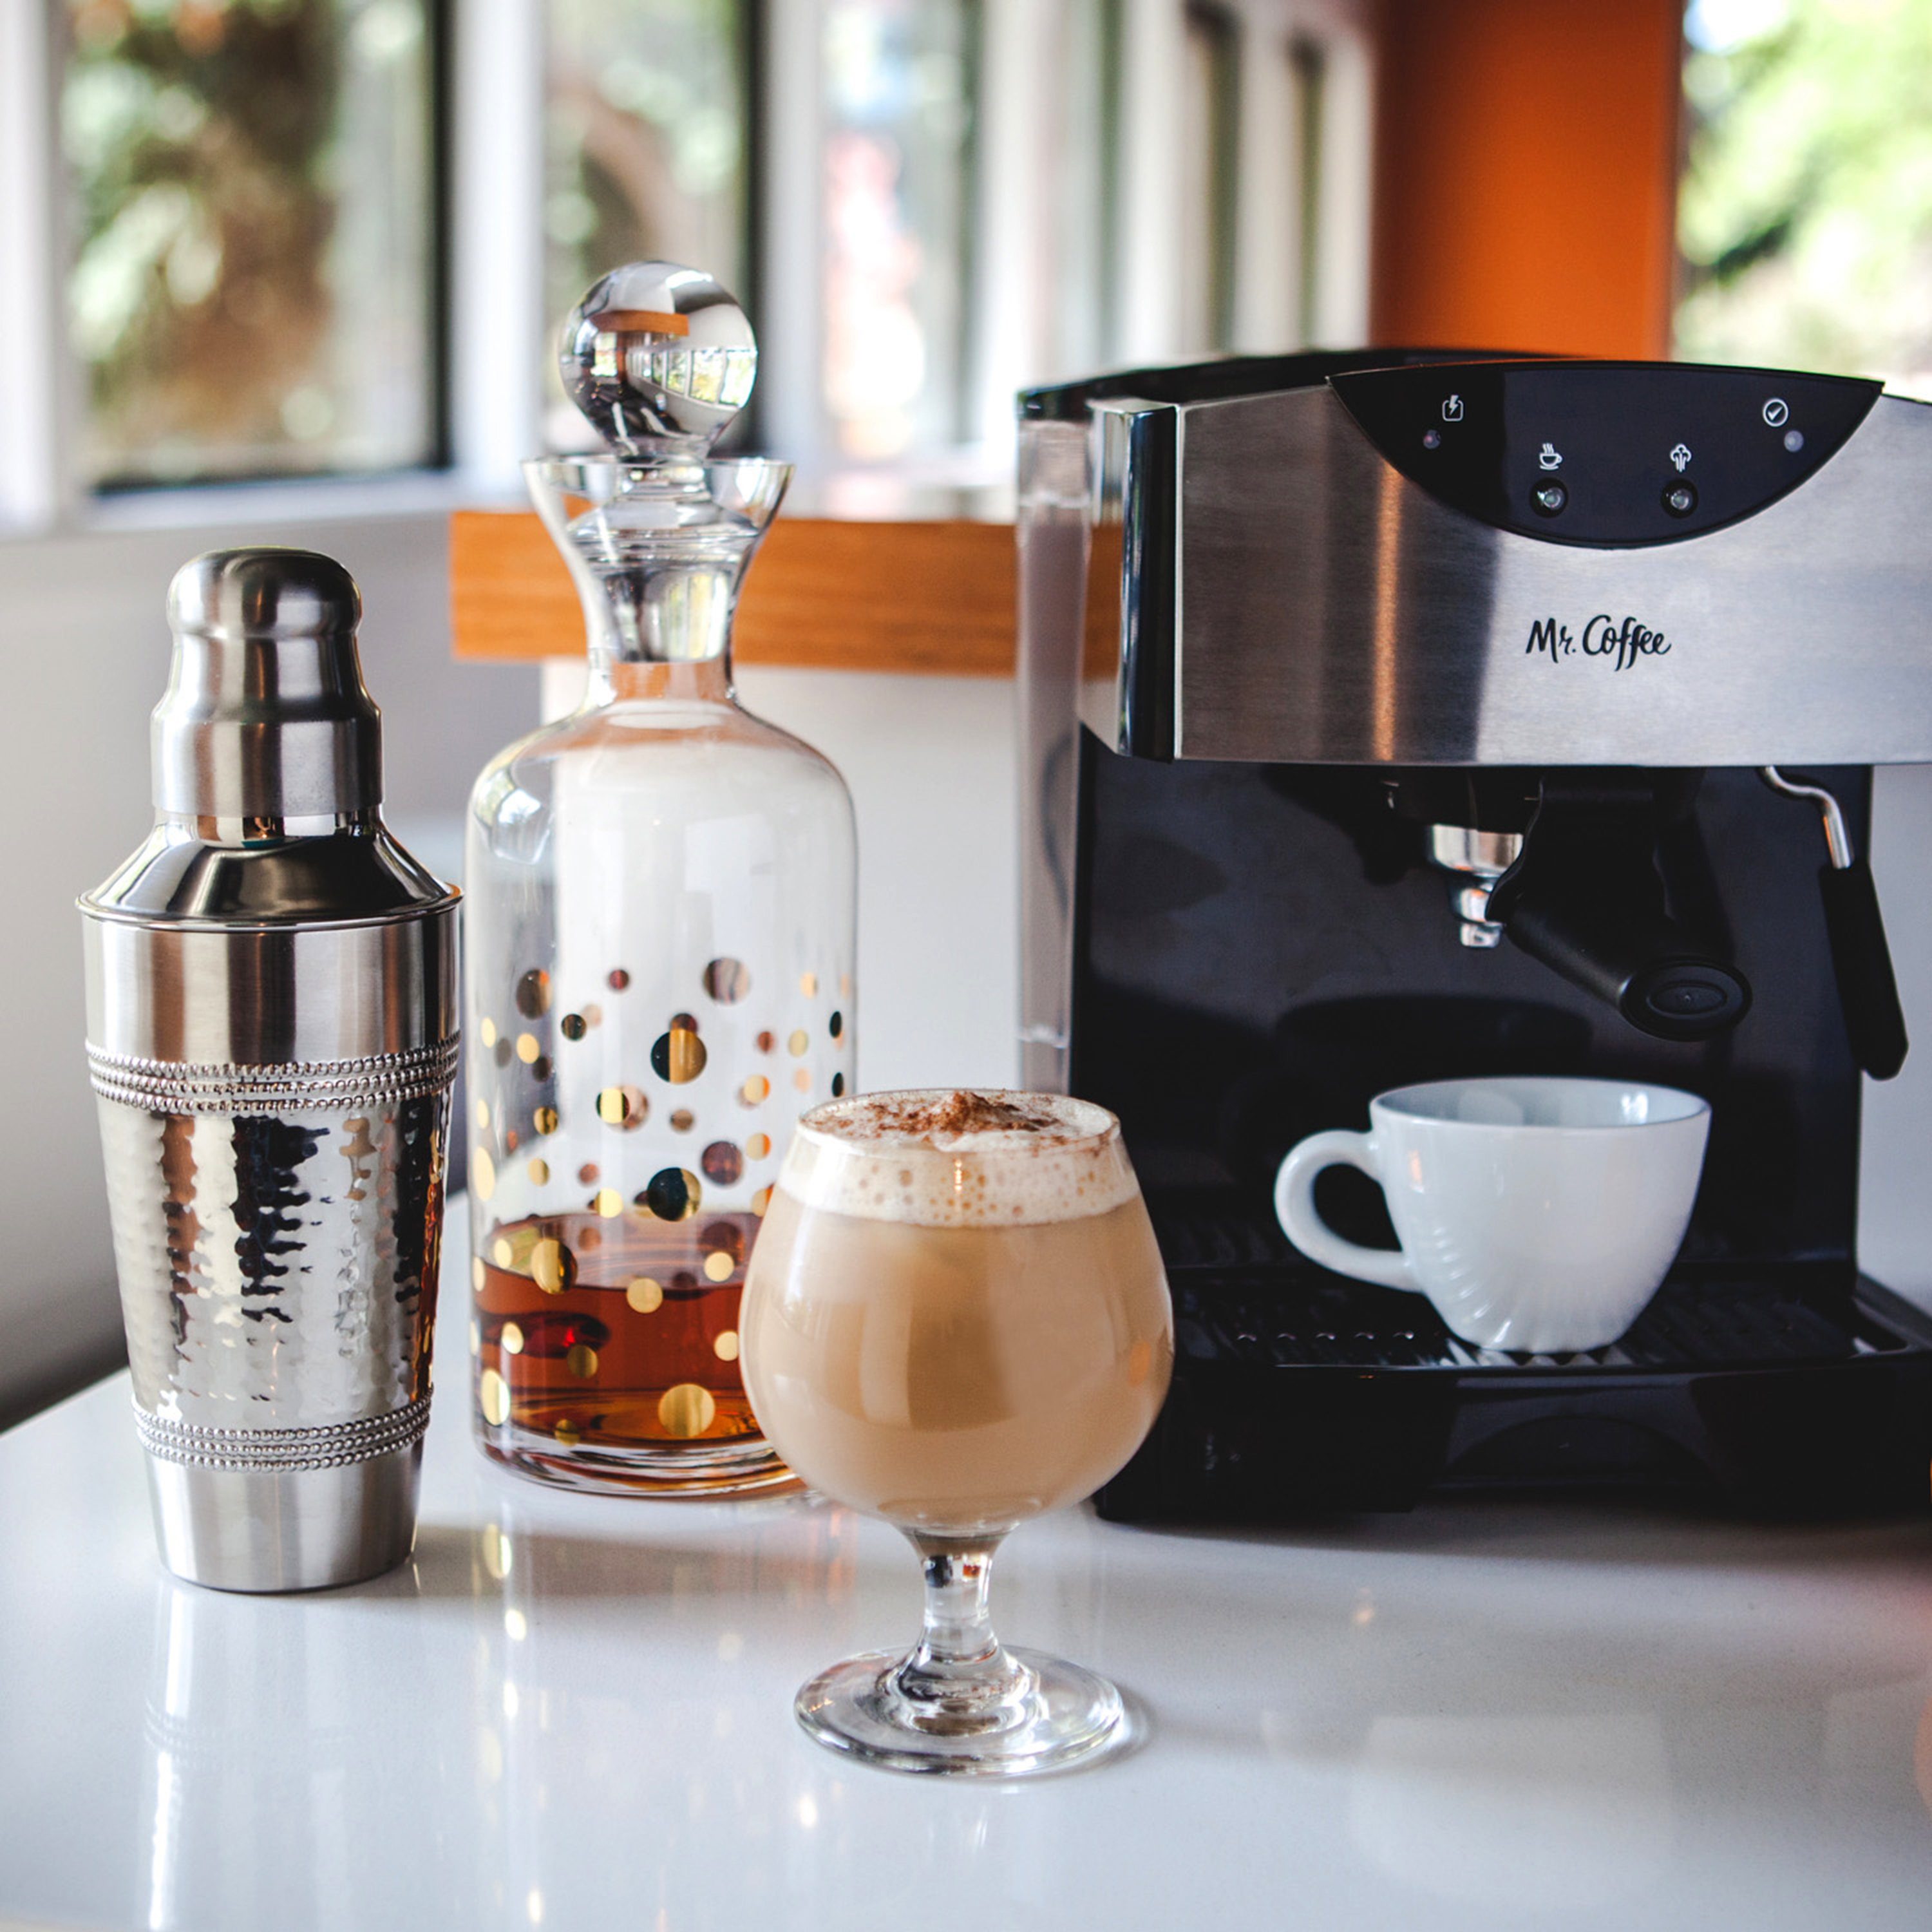 Mr. Coffee 2 Shot Pump Espresso & Cappuccino Maker, Black - image 7 of 8